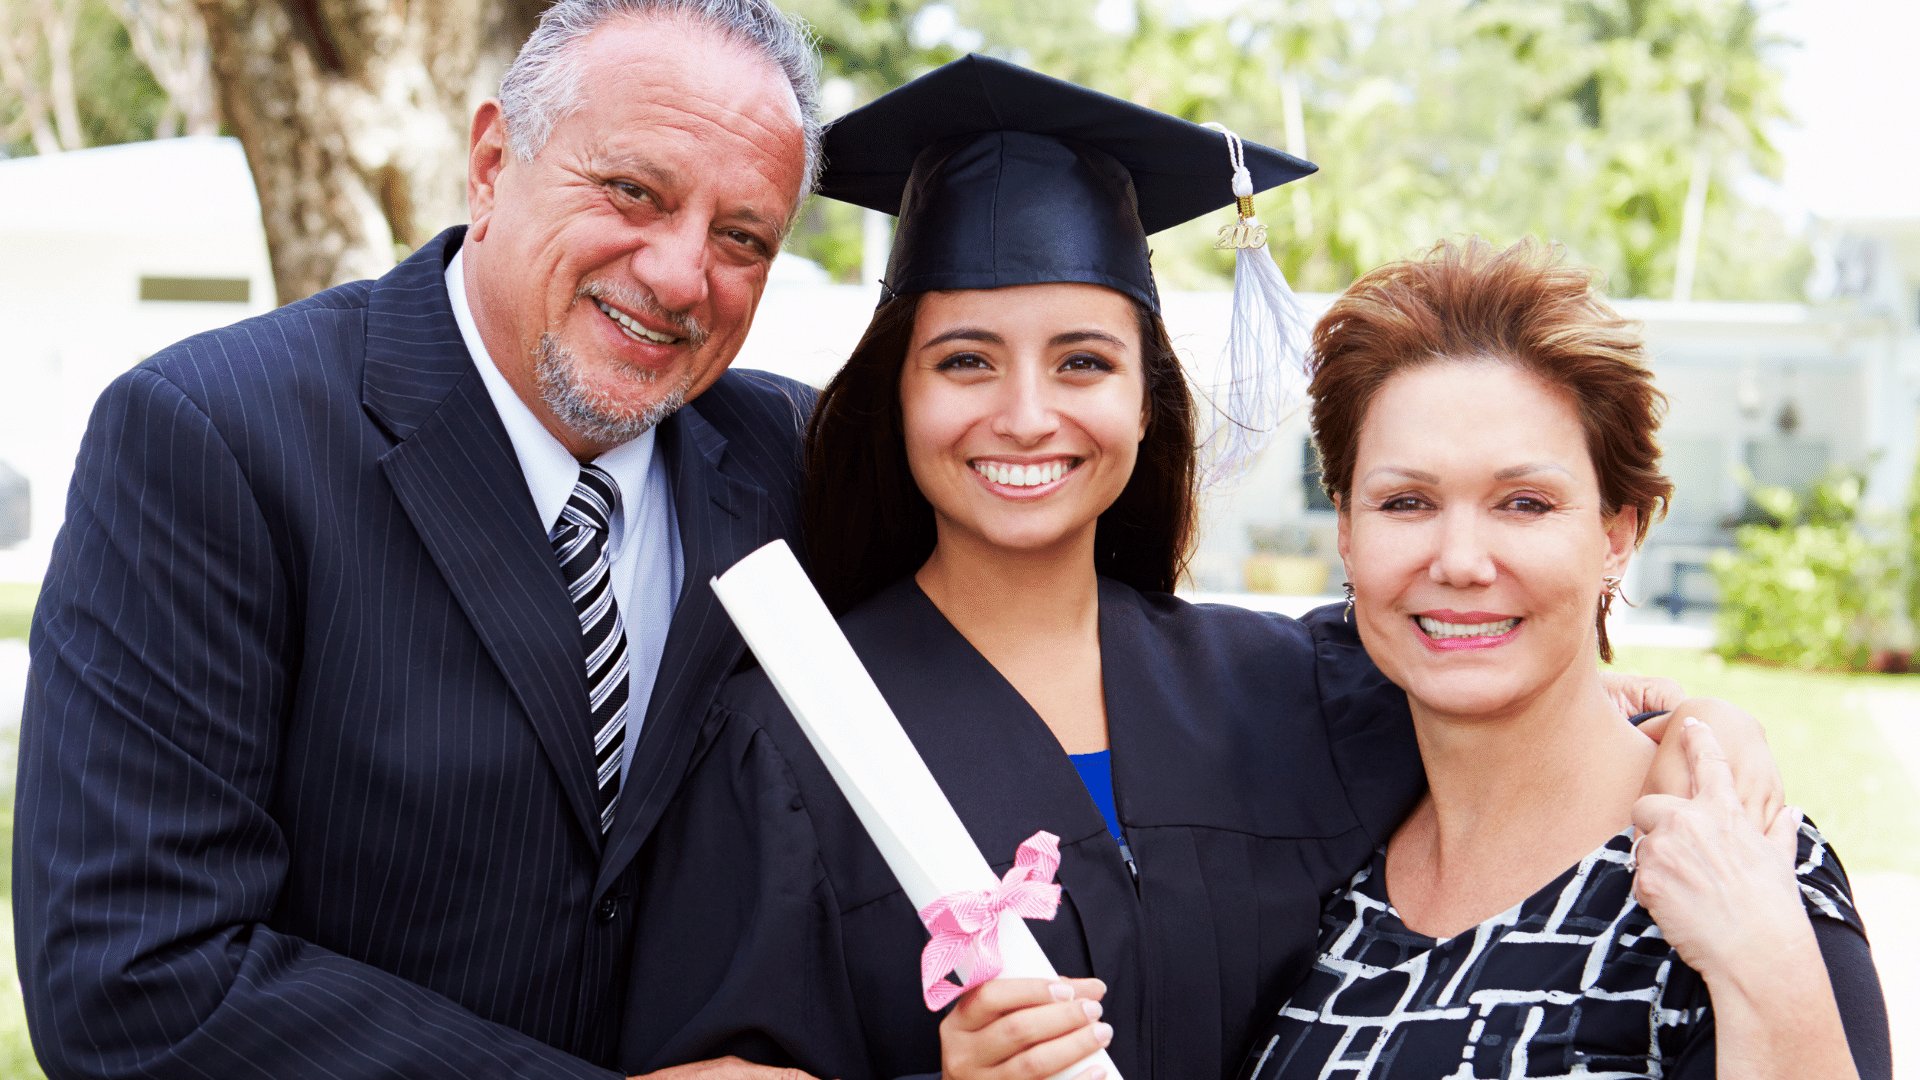 Filha segurando seu diploma abraçada com seu pai e mãe, todos felizes comemorando sua graduação